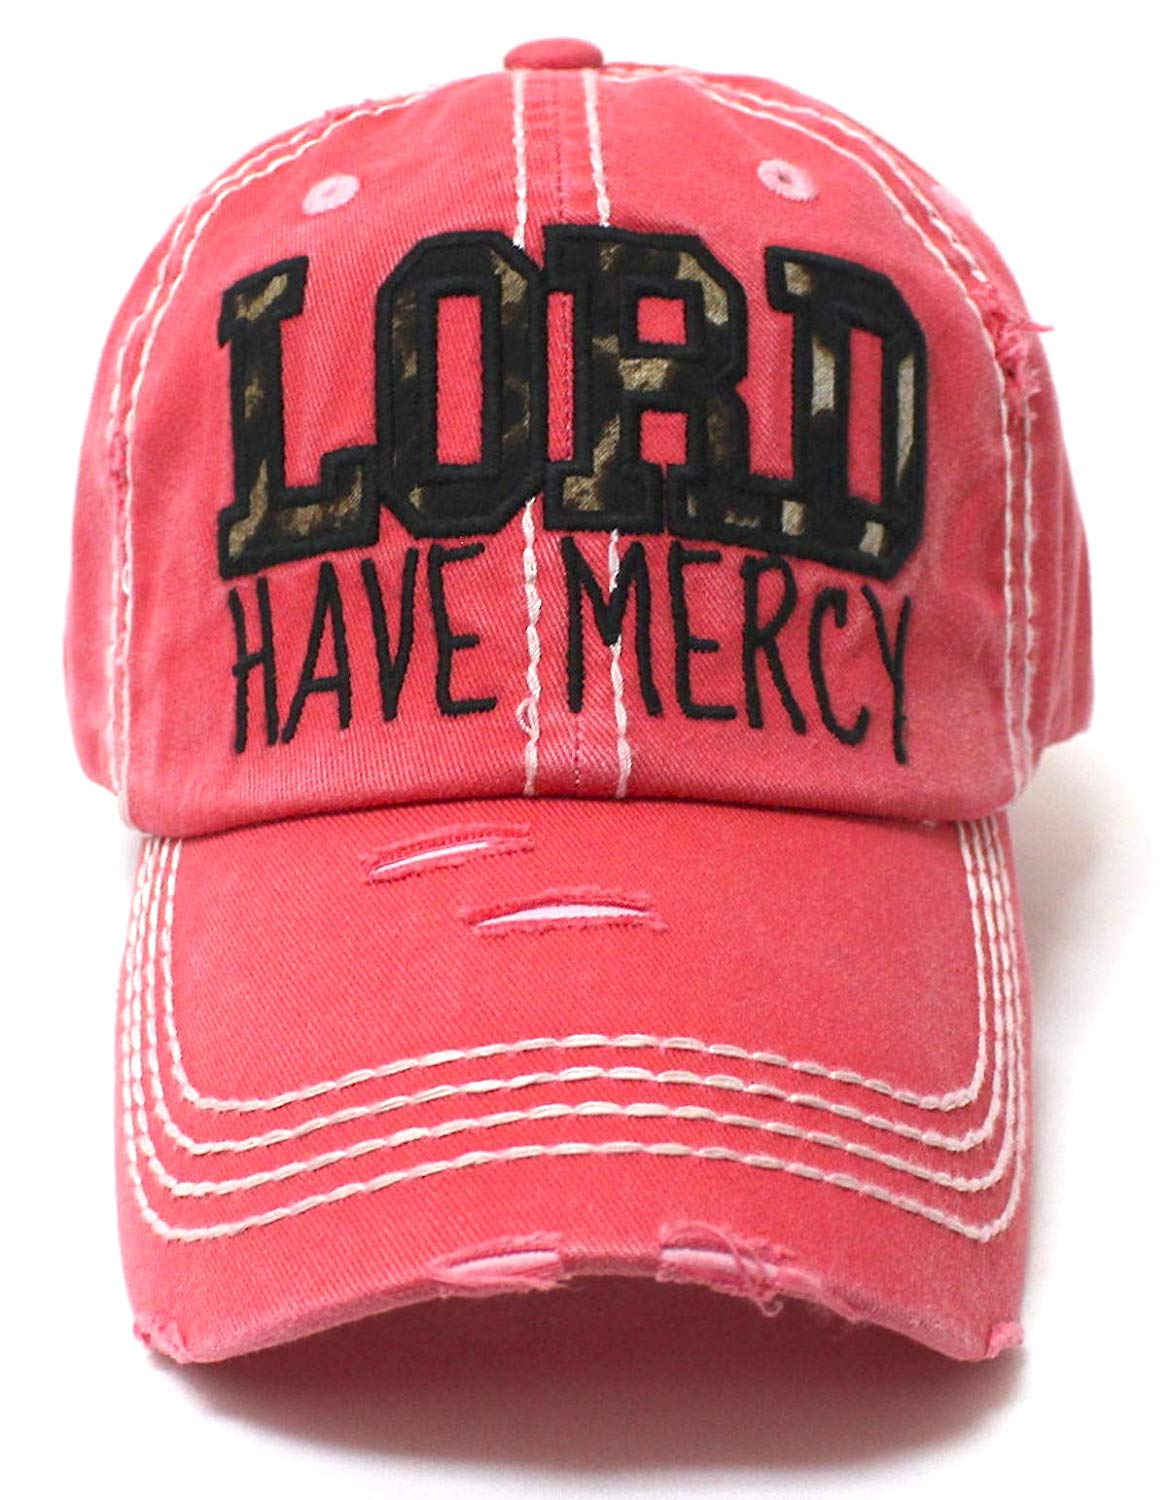 CAPS 'N VINTAGE Coral Rose Lord Have Mercy Leopard Baseball Hat - Caps 'N Vintage 